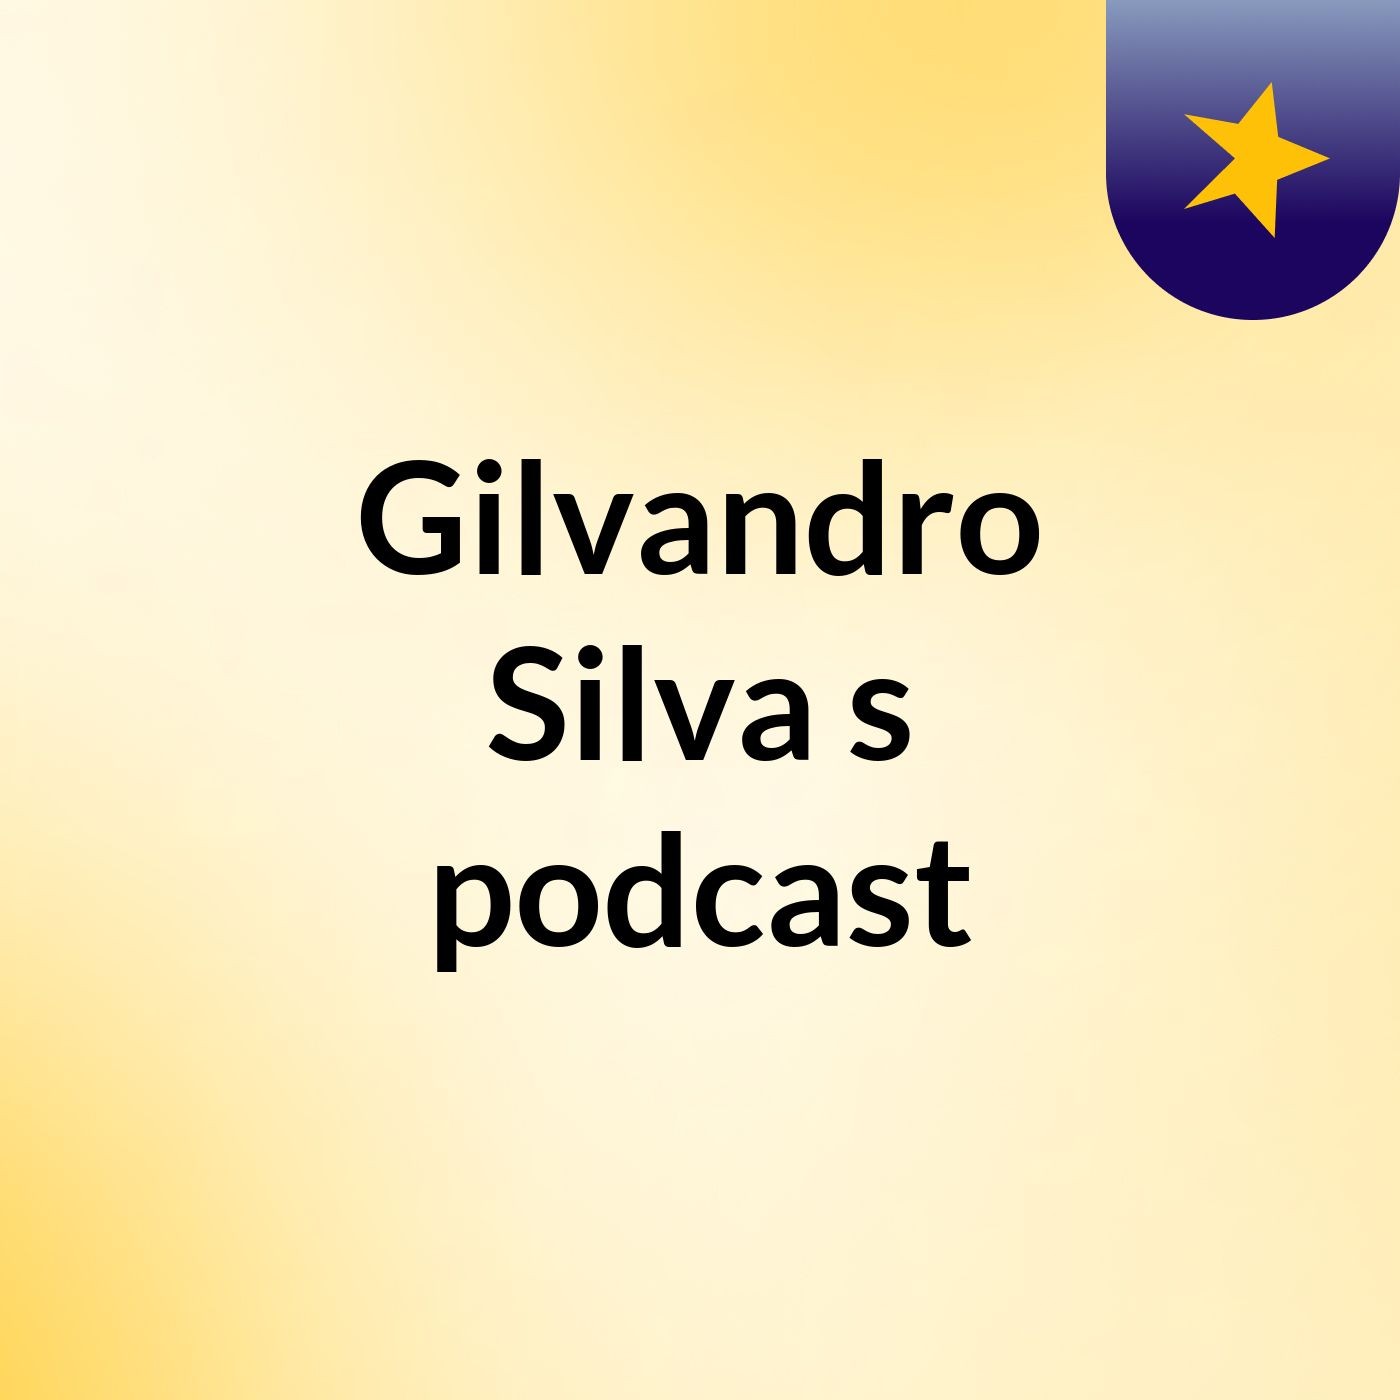 Gilvandro Silva's podcast